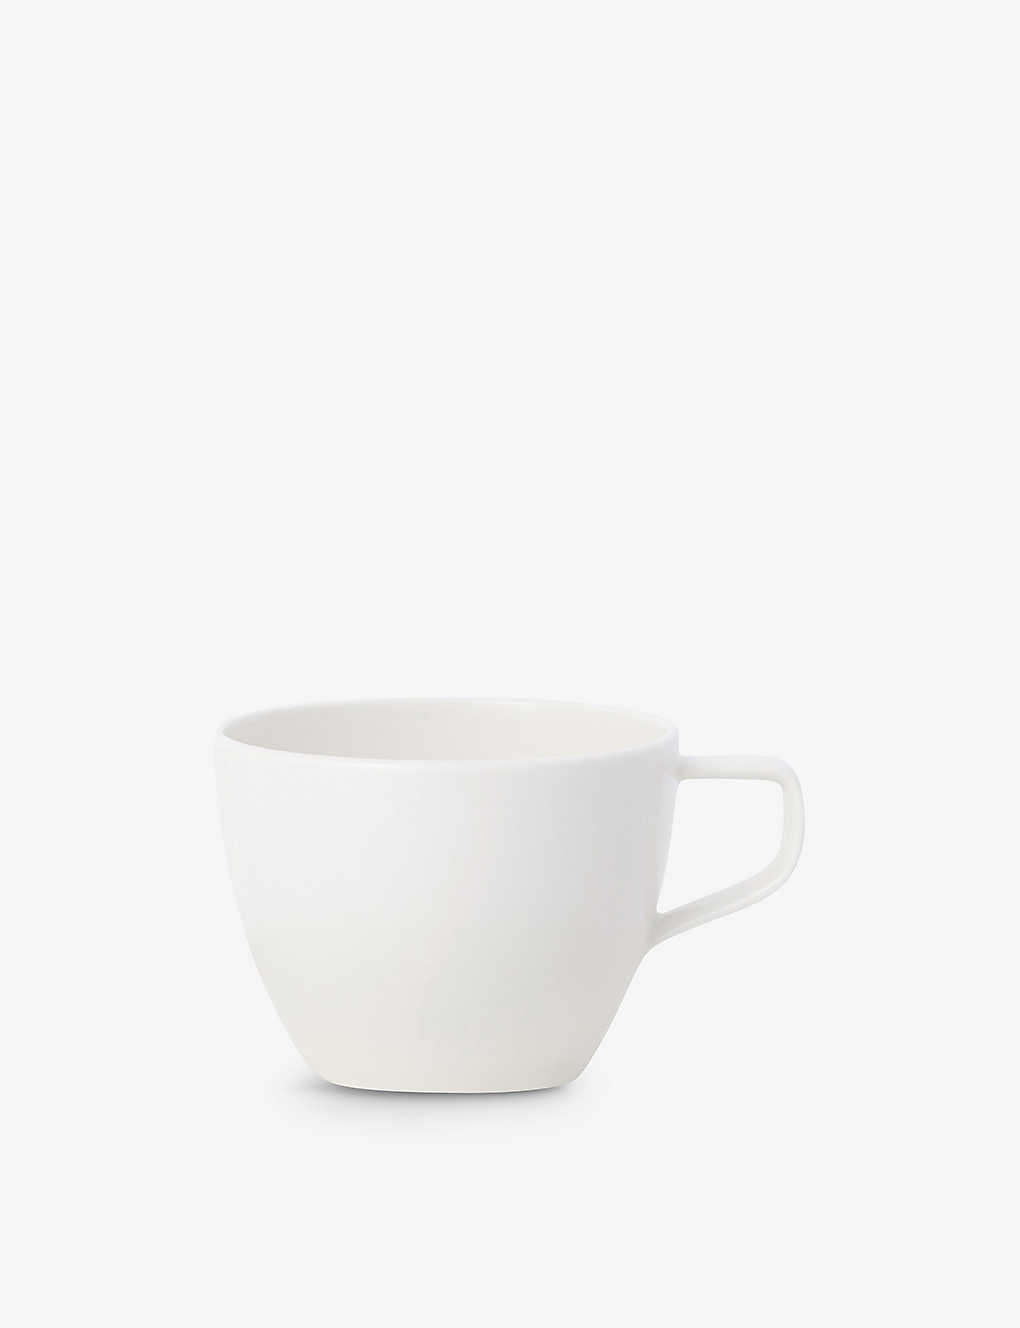 Villeroy & Boch Artesano Original Porcelain Coffee Cup 170ml